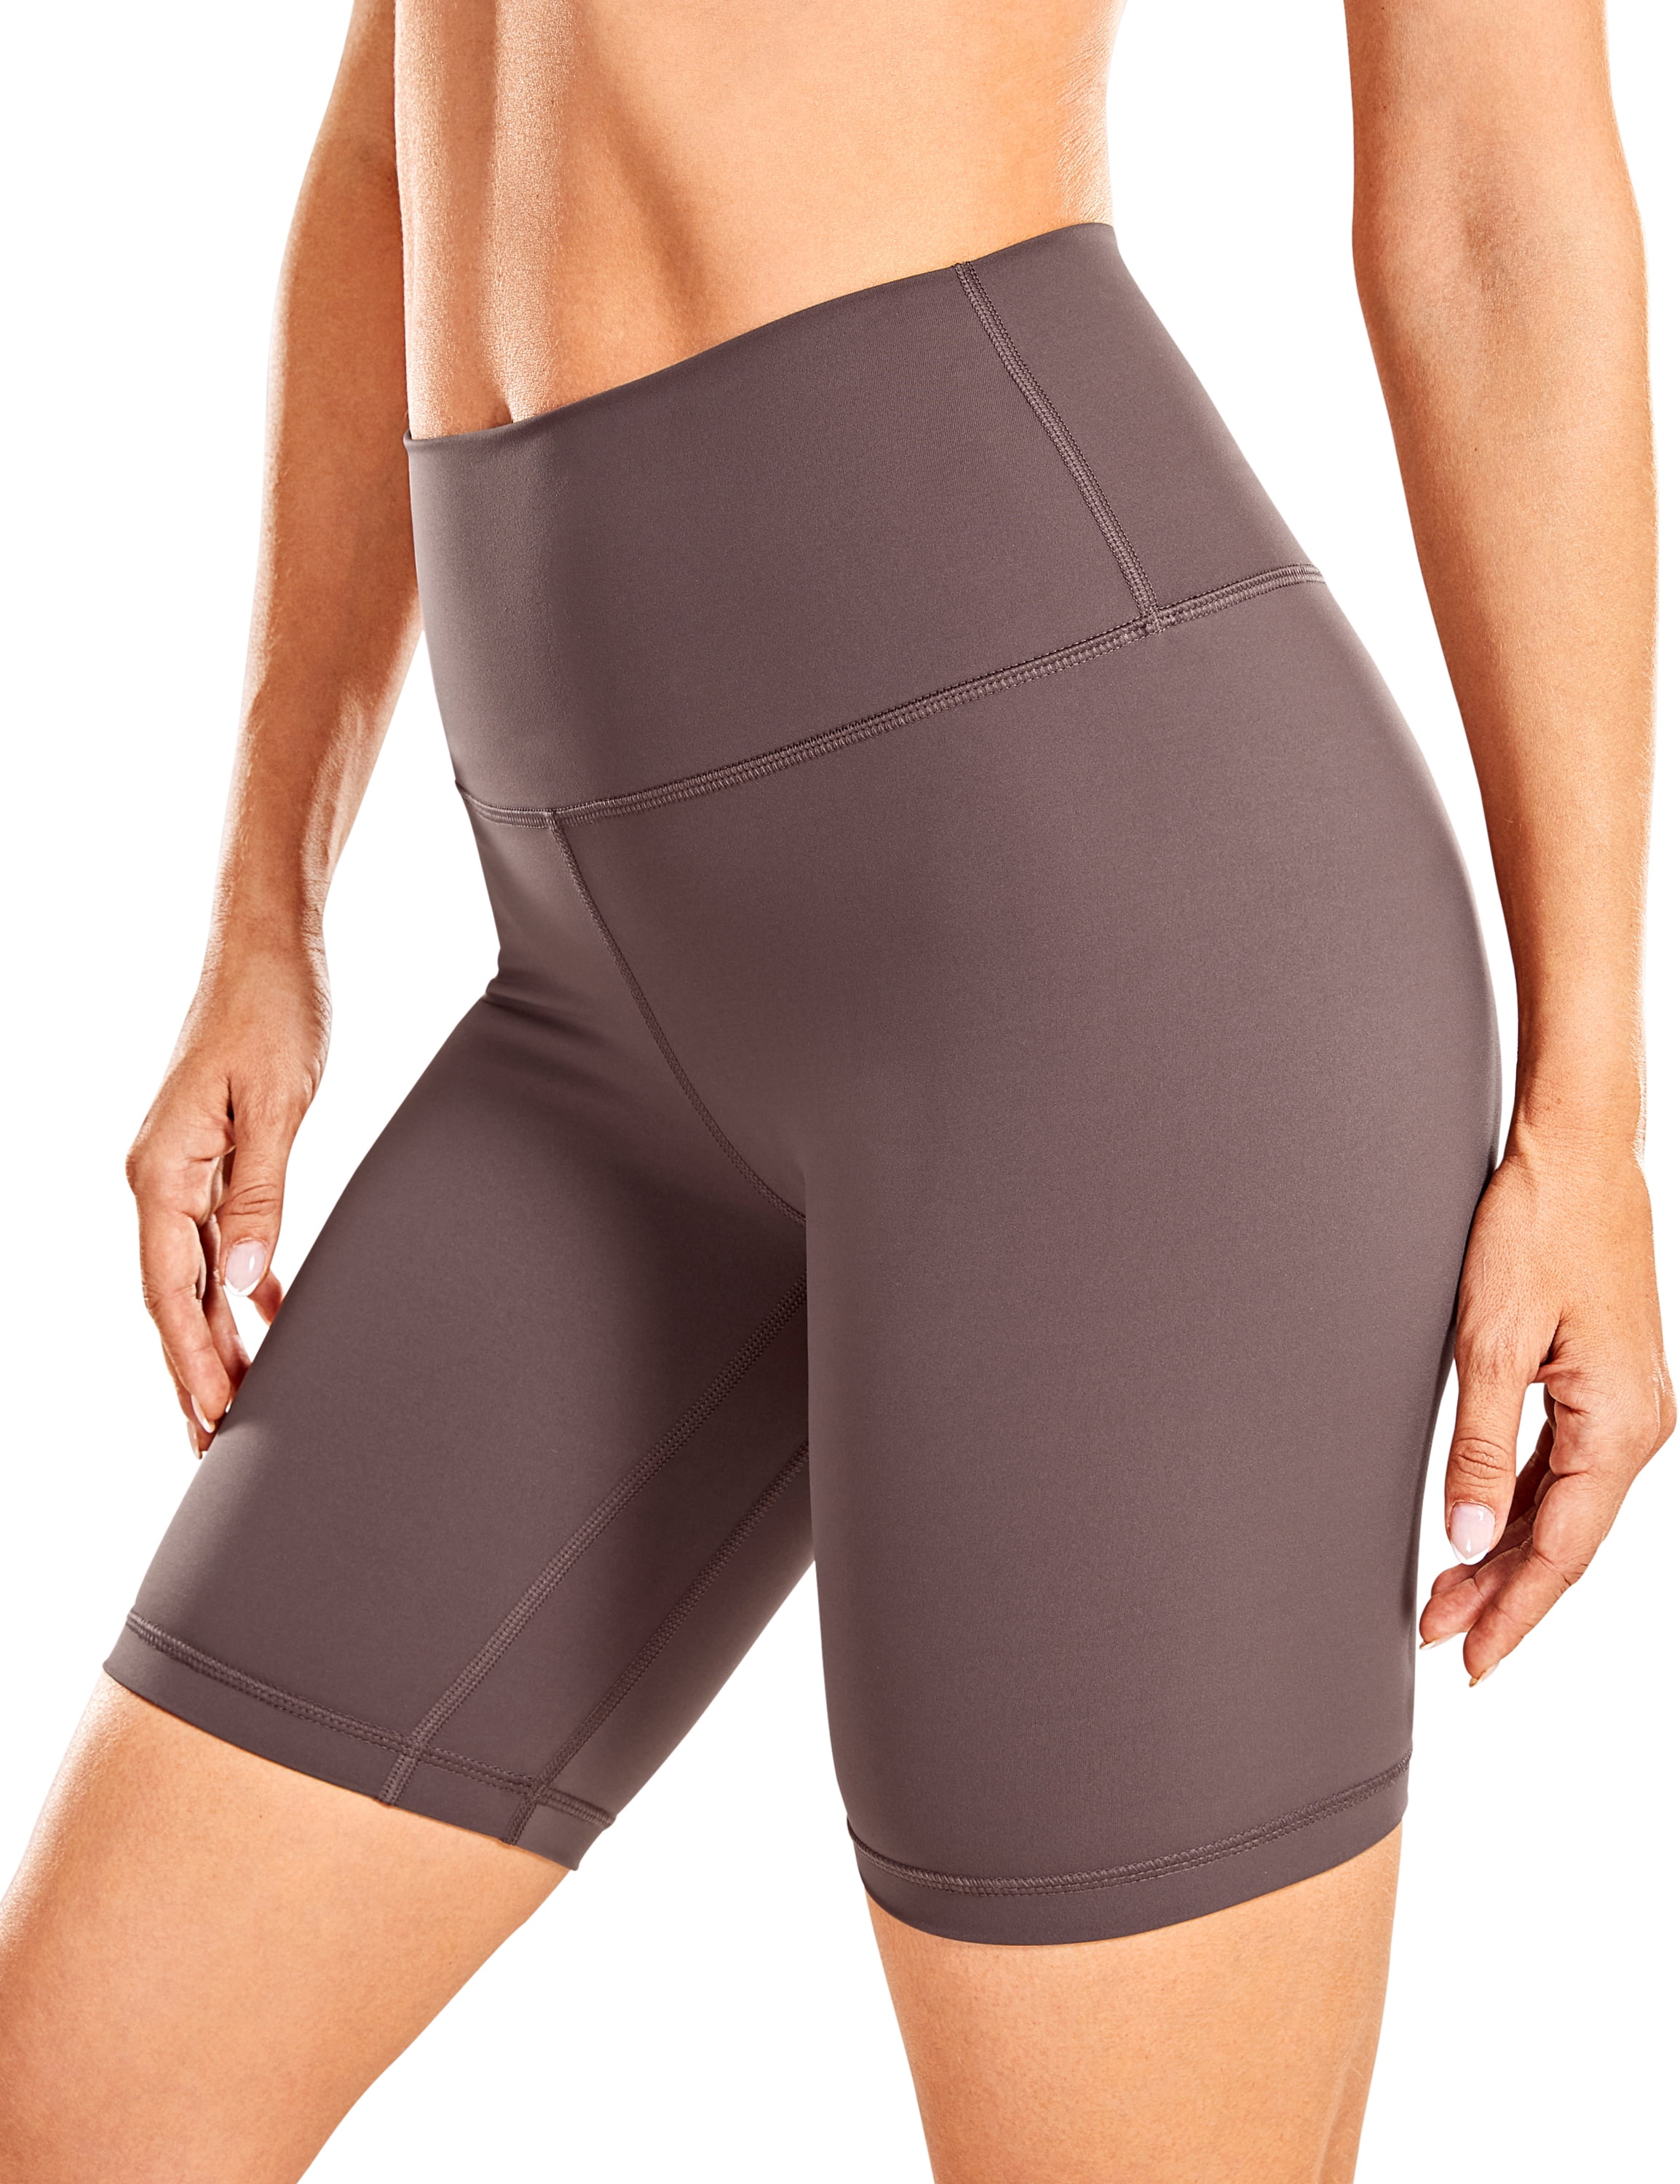 CRZ YOGA Women's Workout Yoga Shorts Tummy Control Naked Feeling Soft Athletic Biker Shorts 10 Inches